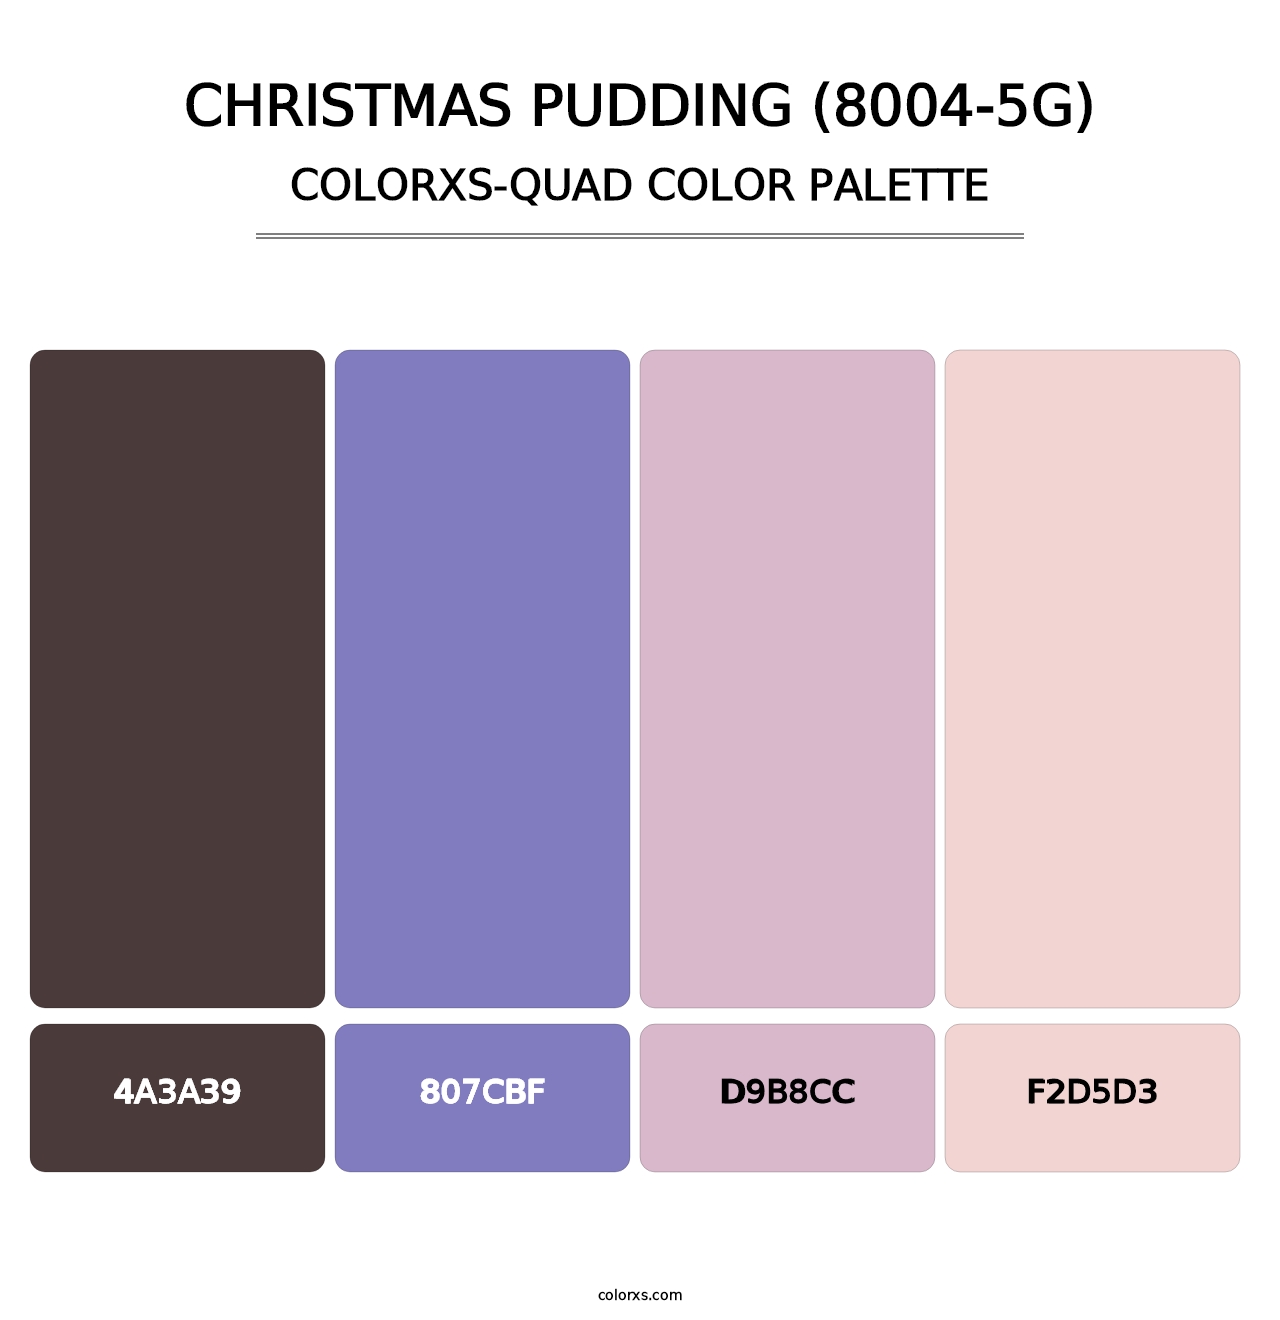 Christmas Pudding (8004-5G) - Colorxs Quad Palette